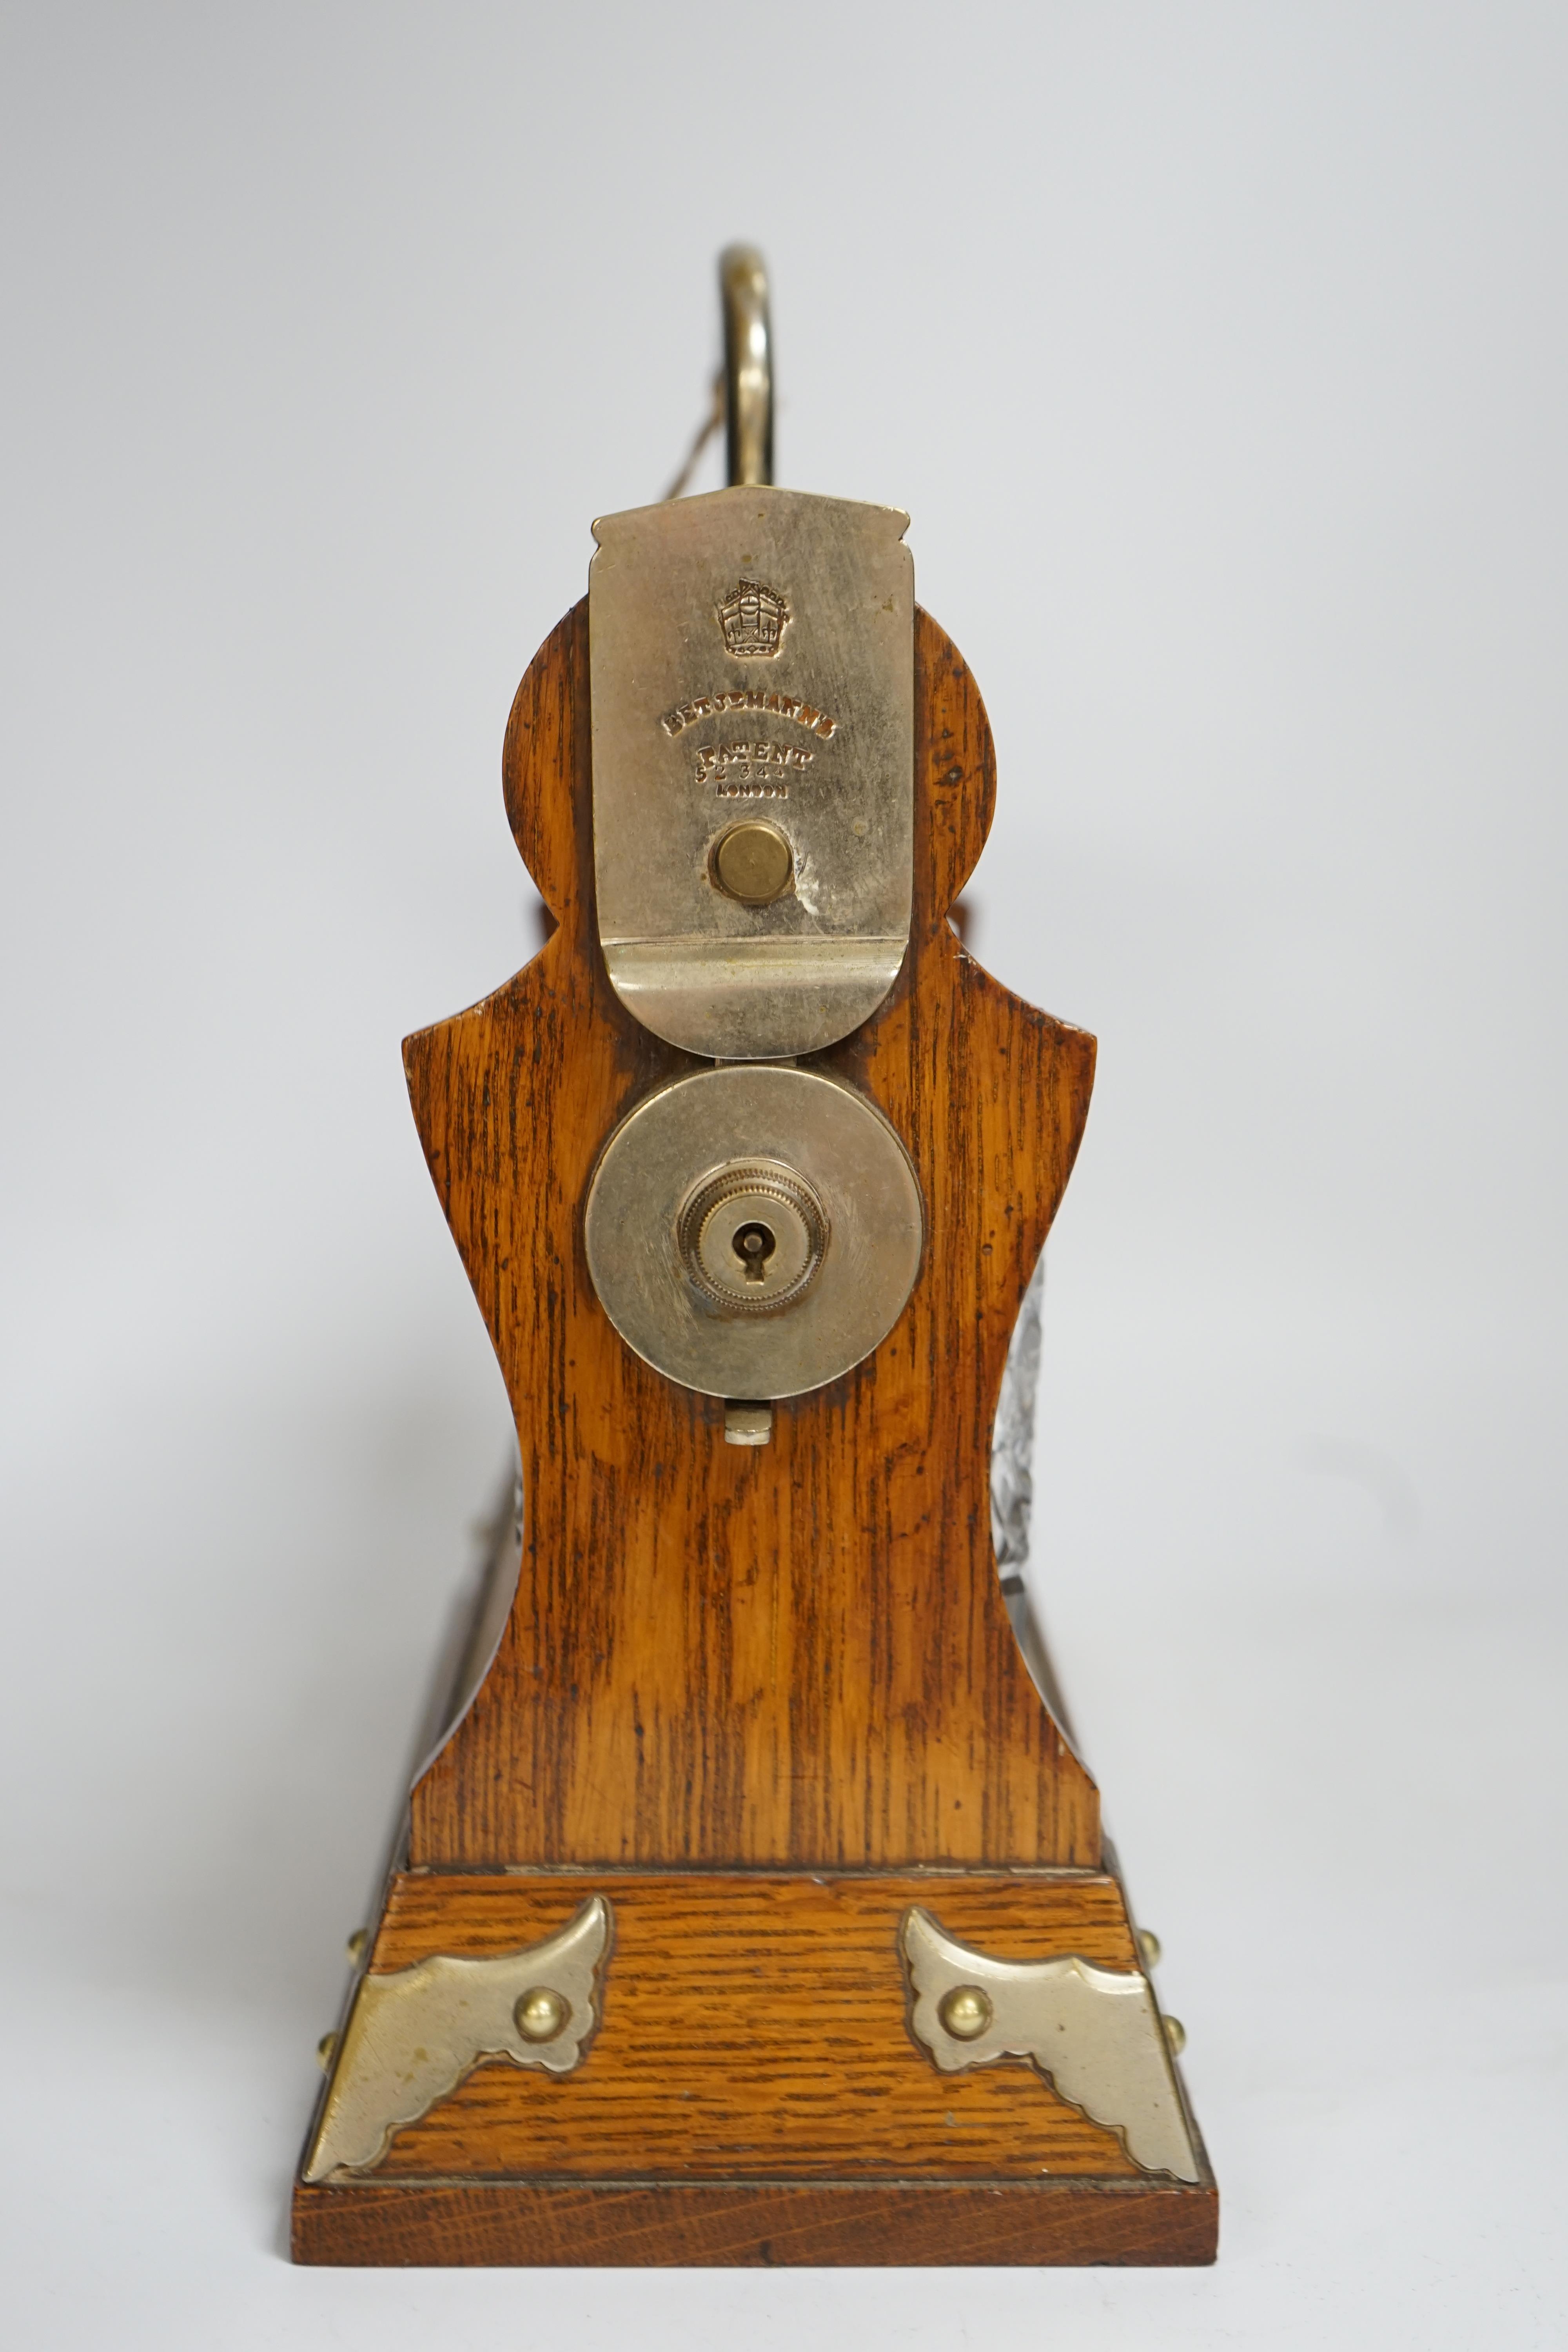 A Betjemann’s patent oak three bottle tantalus with key, 32cm wide